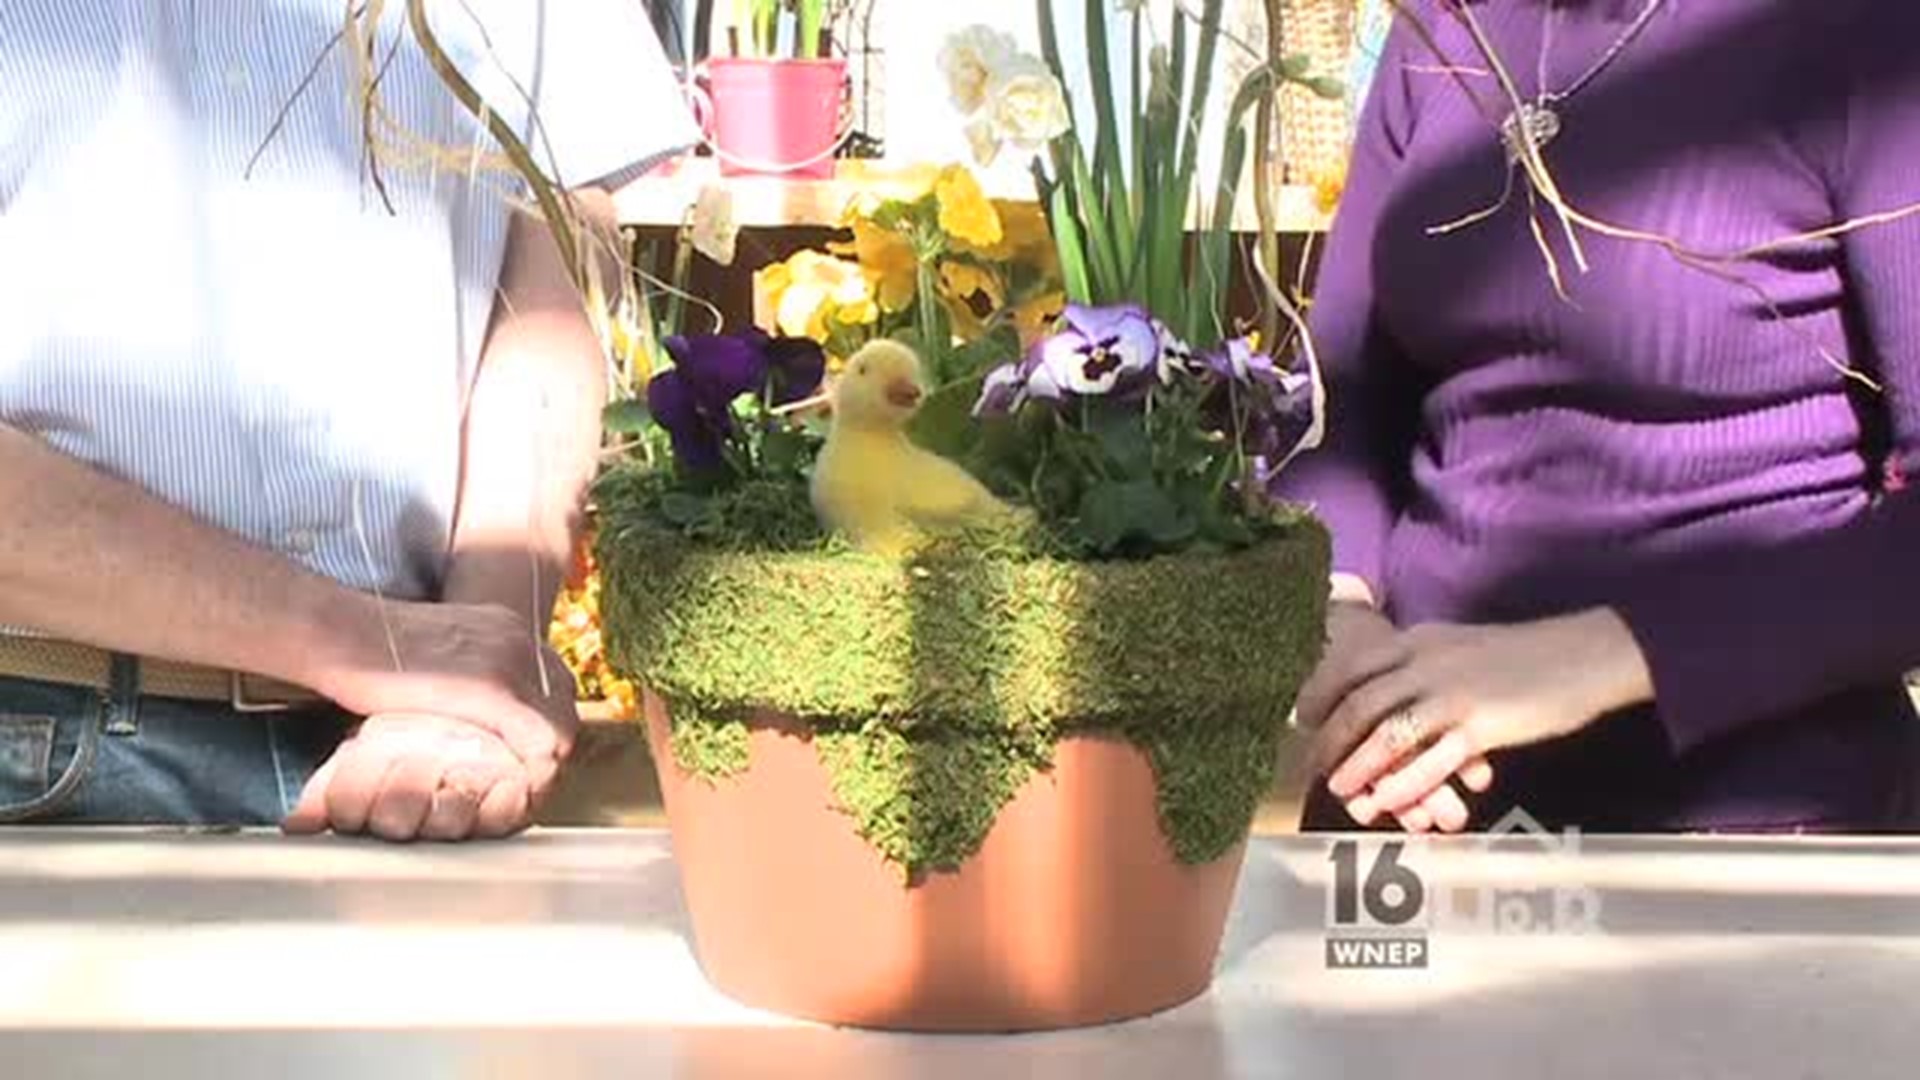 Easter Floral Basket